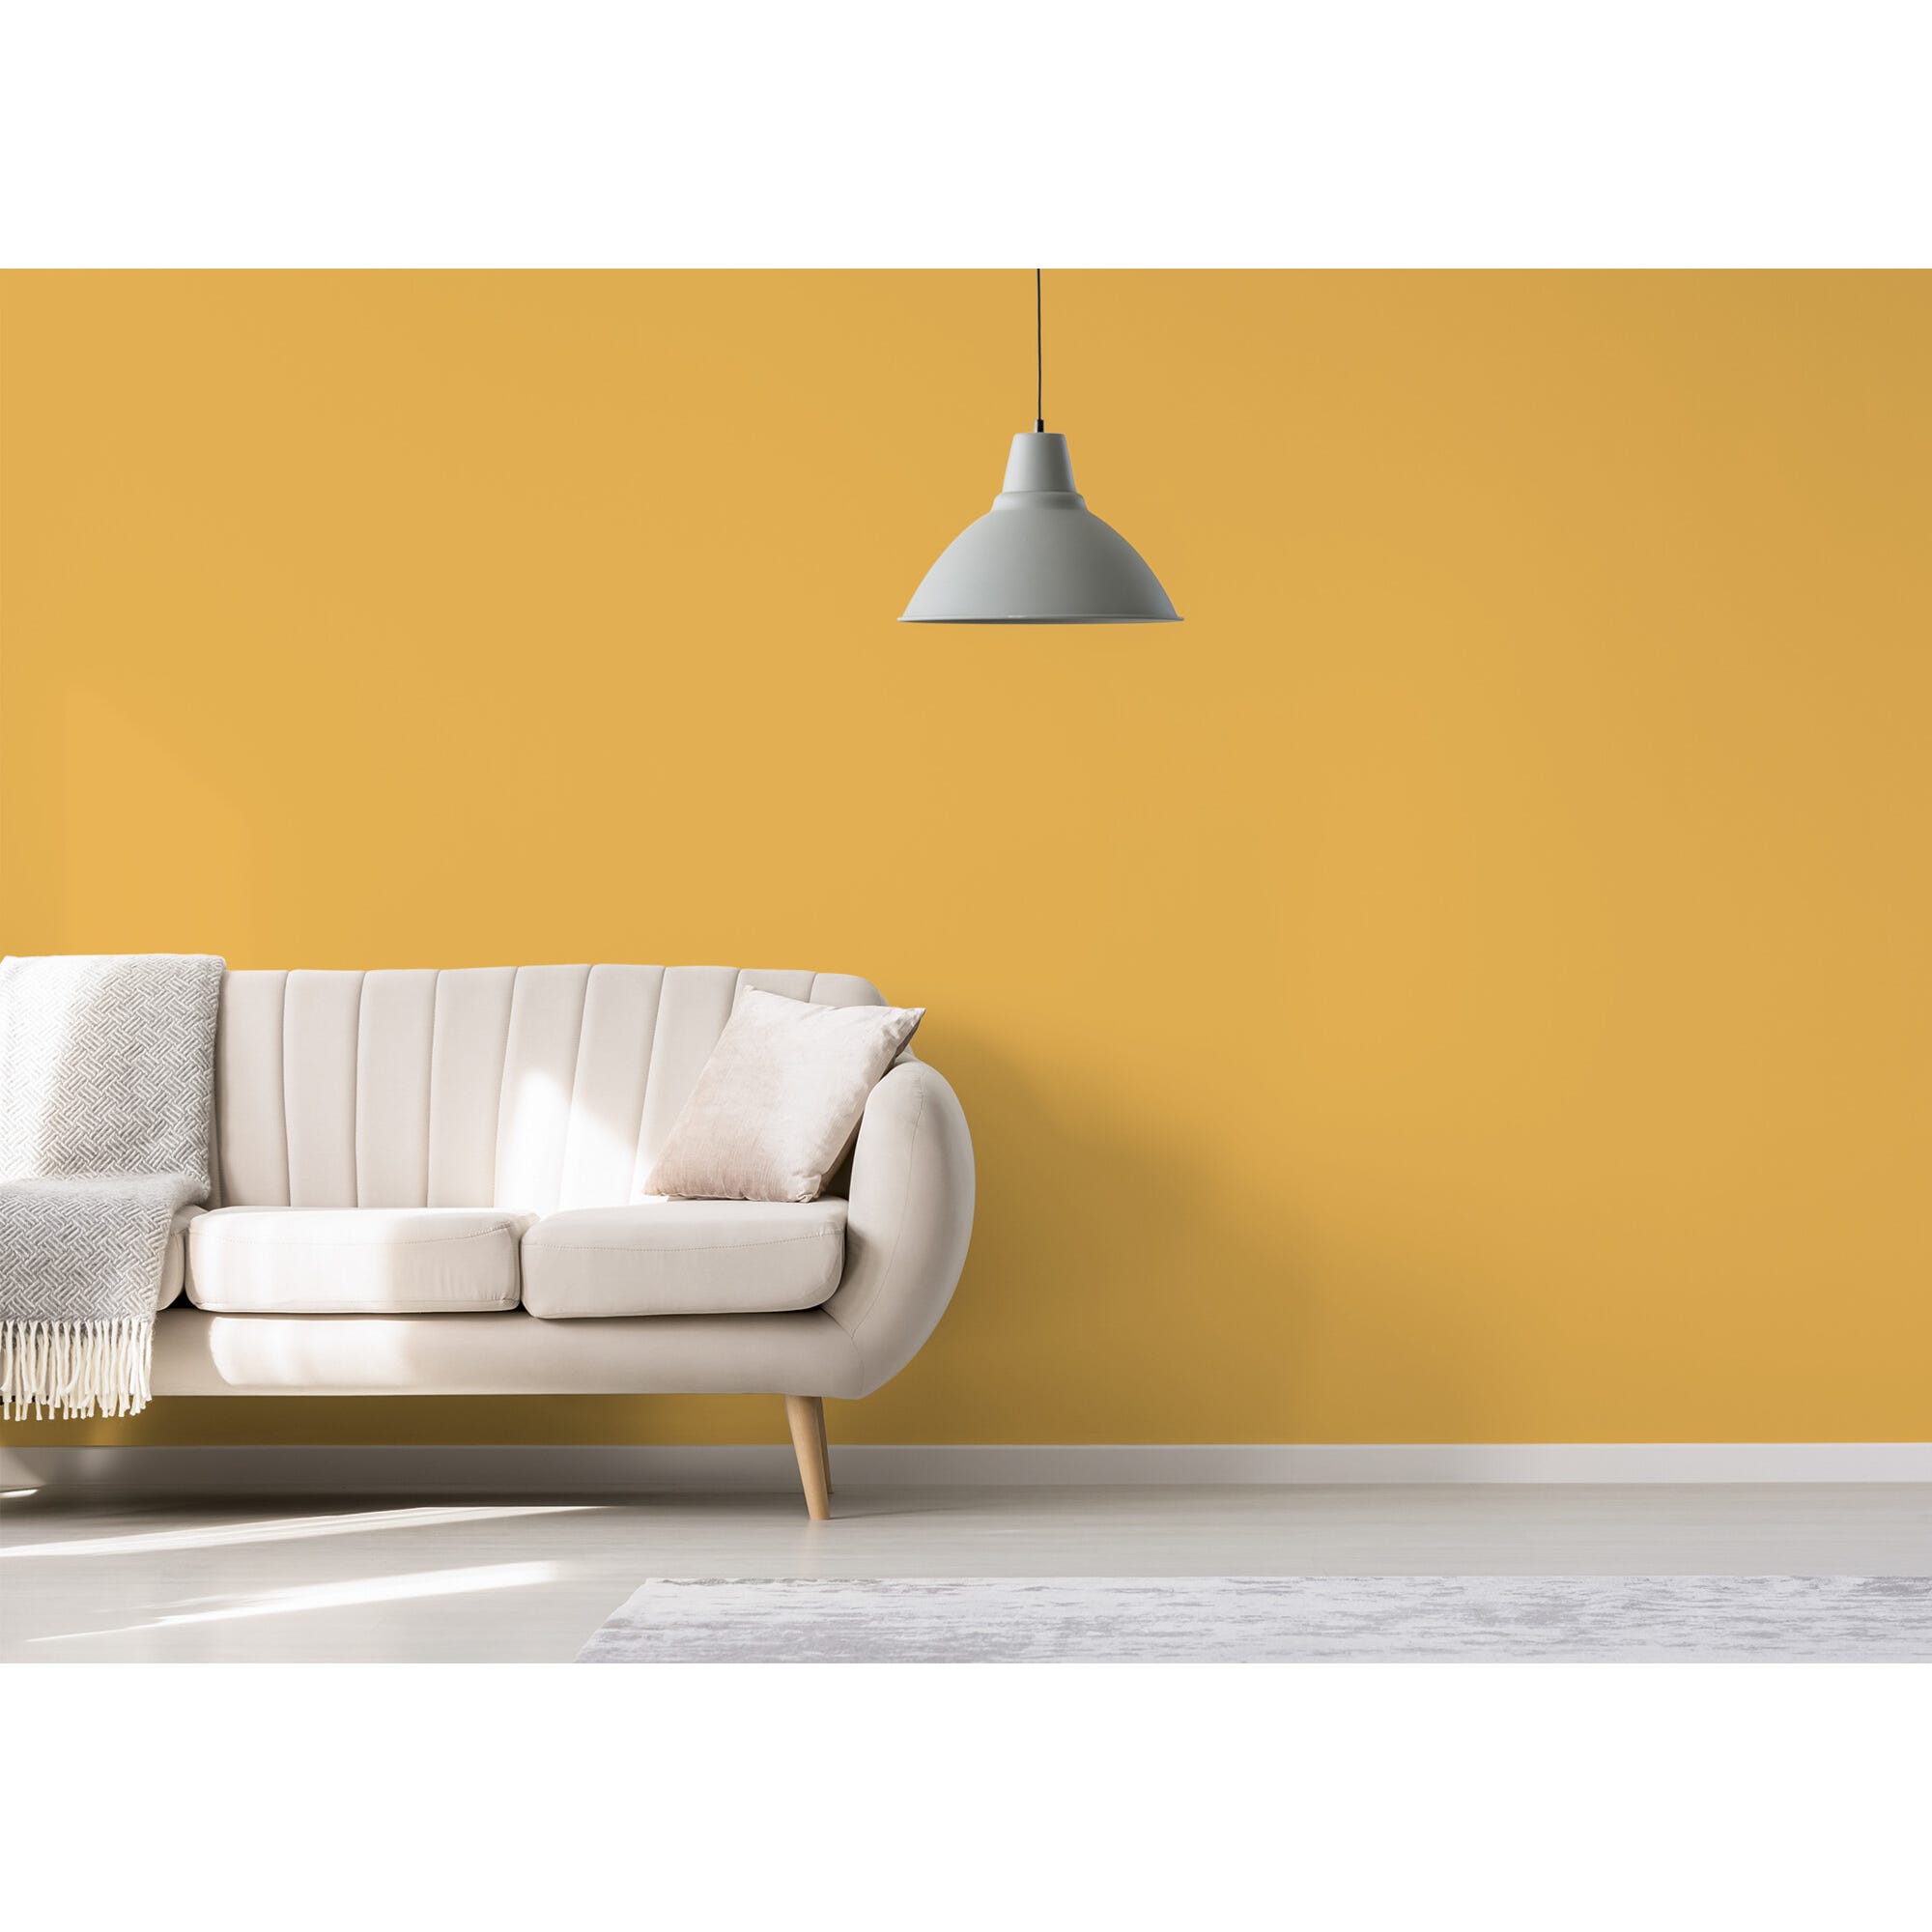 Peinture intérieure velours jaune delaunay teintée en machine 3 L Altea - GAUTHIER 5